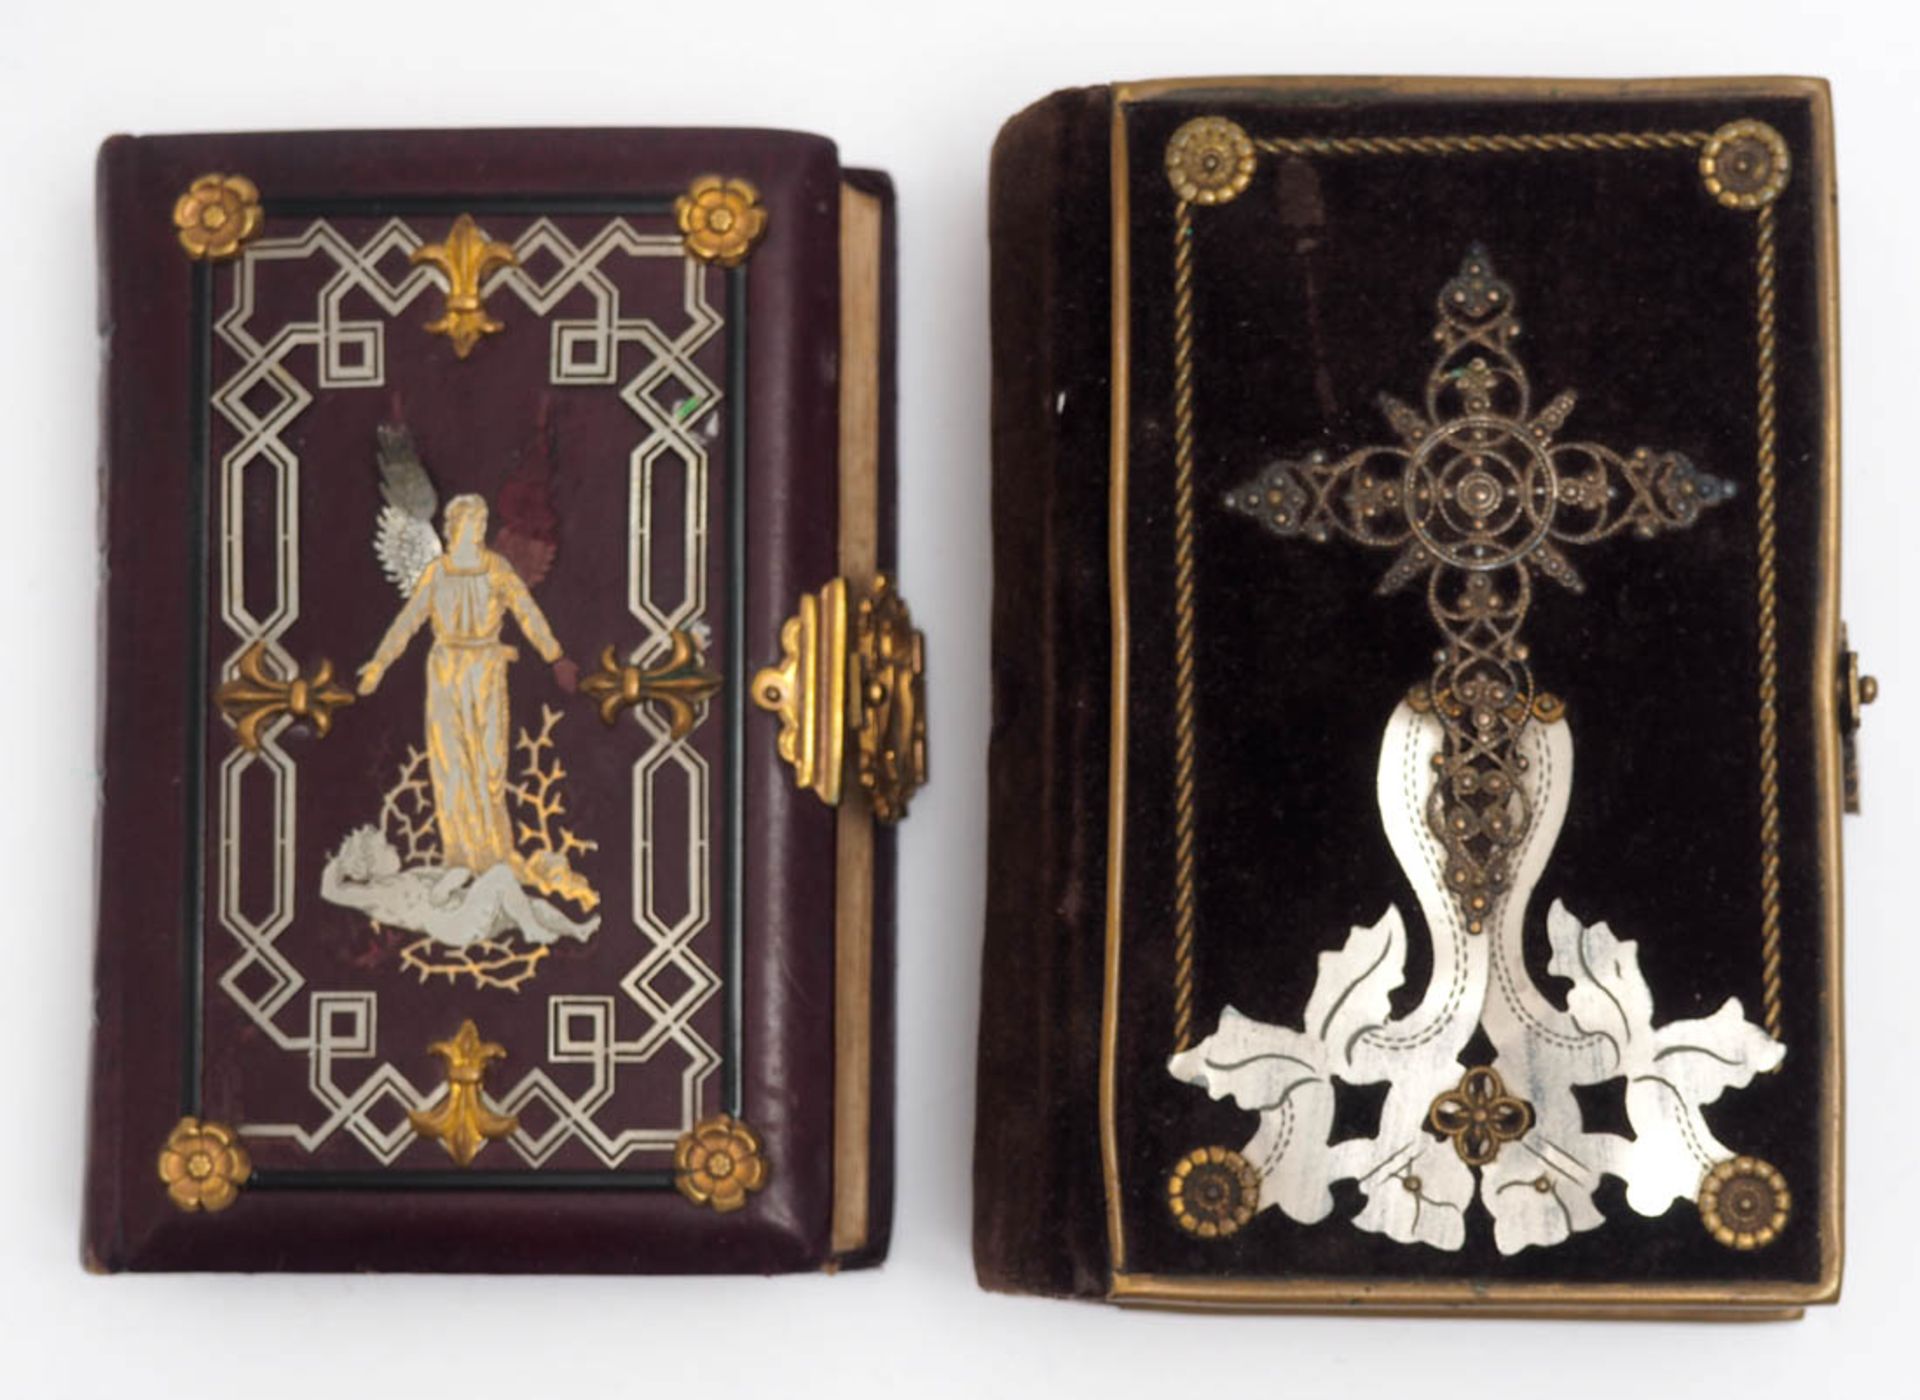 Zwei katholische Gebetbücher, 1897 bzw. 1888 Titelillustrationen (Chromolithographien). Verlag Bunke